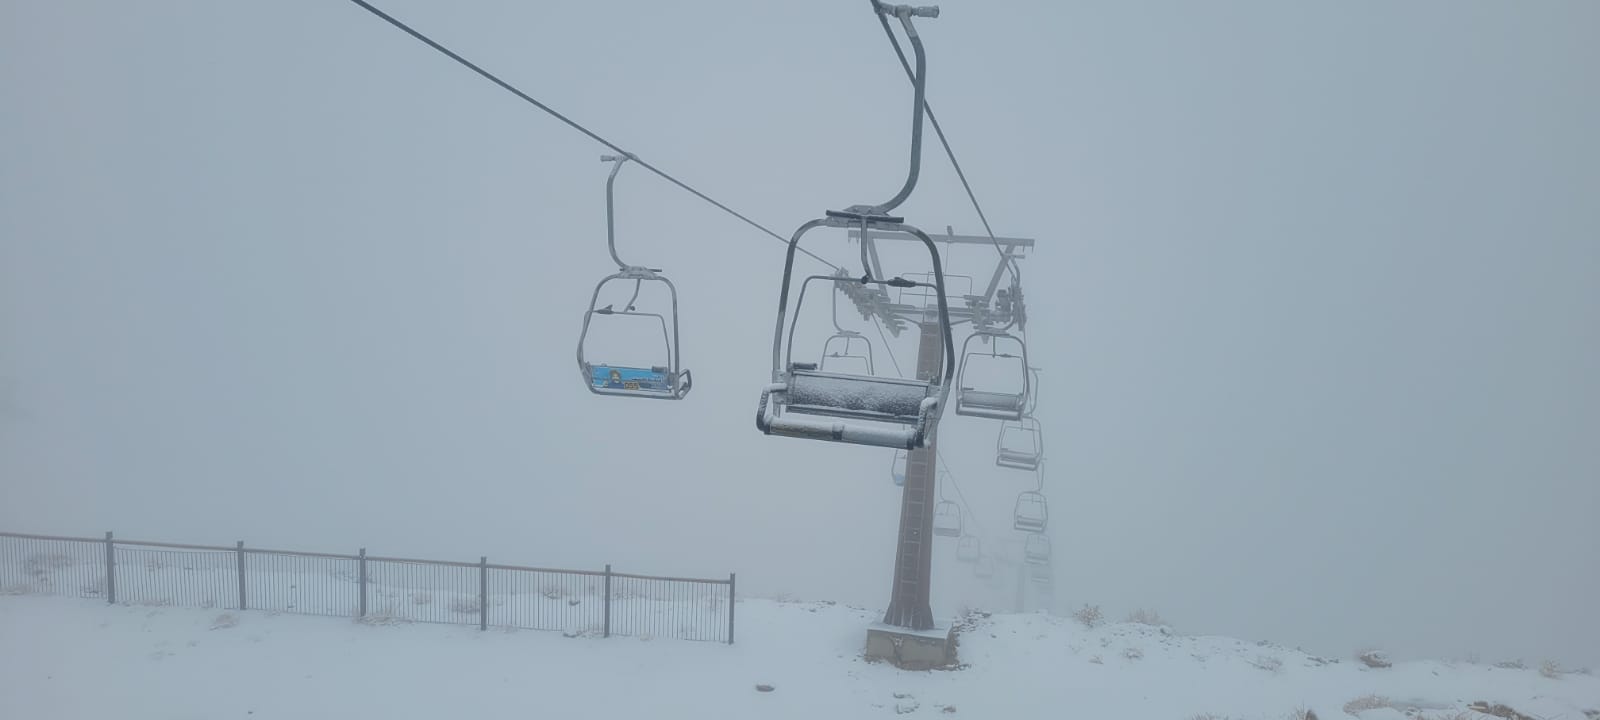 אתר החרמון נפתח למבקרים: שלג במפלס העליון